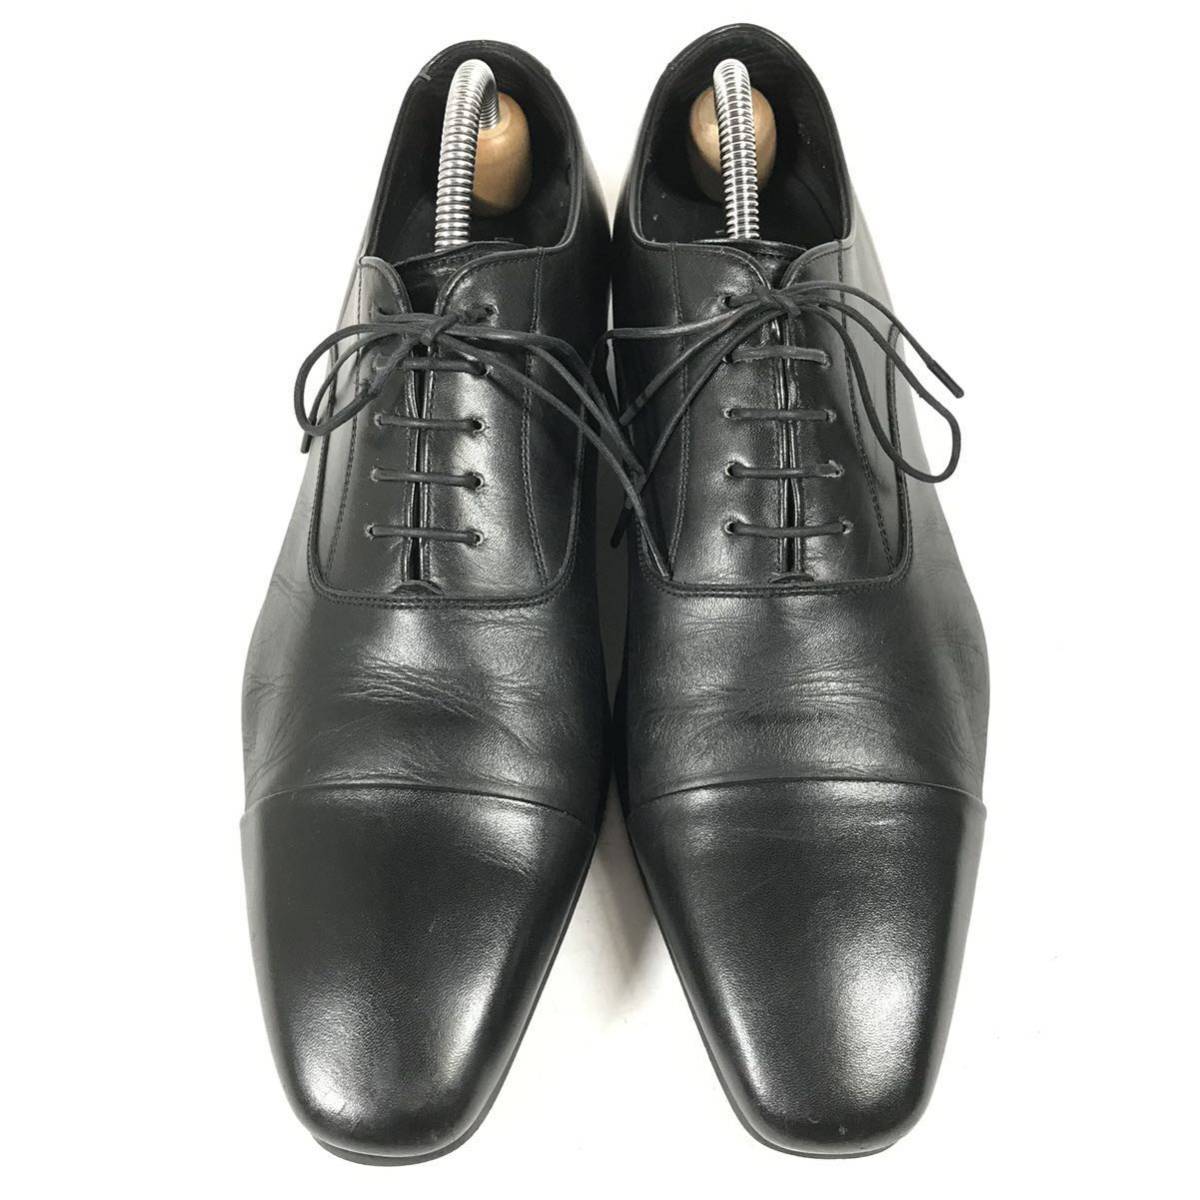 【リーガル】本物 REGAL 靴 25cm 黒 ストレートチップ ビジネスシューズ 内羽根式 本革 レザー 男性用 メンズ 日本製 25 b_画像2